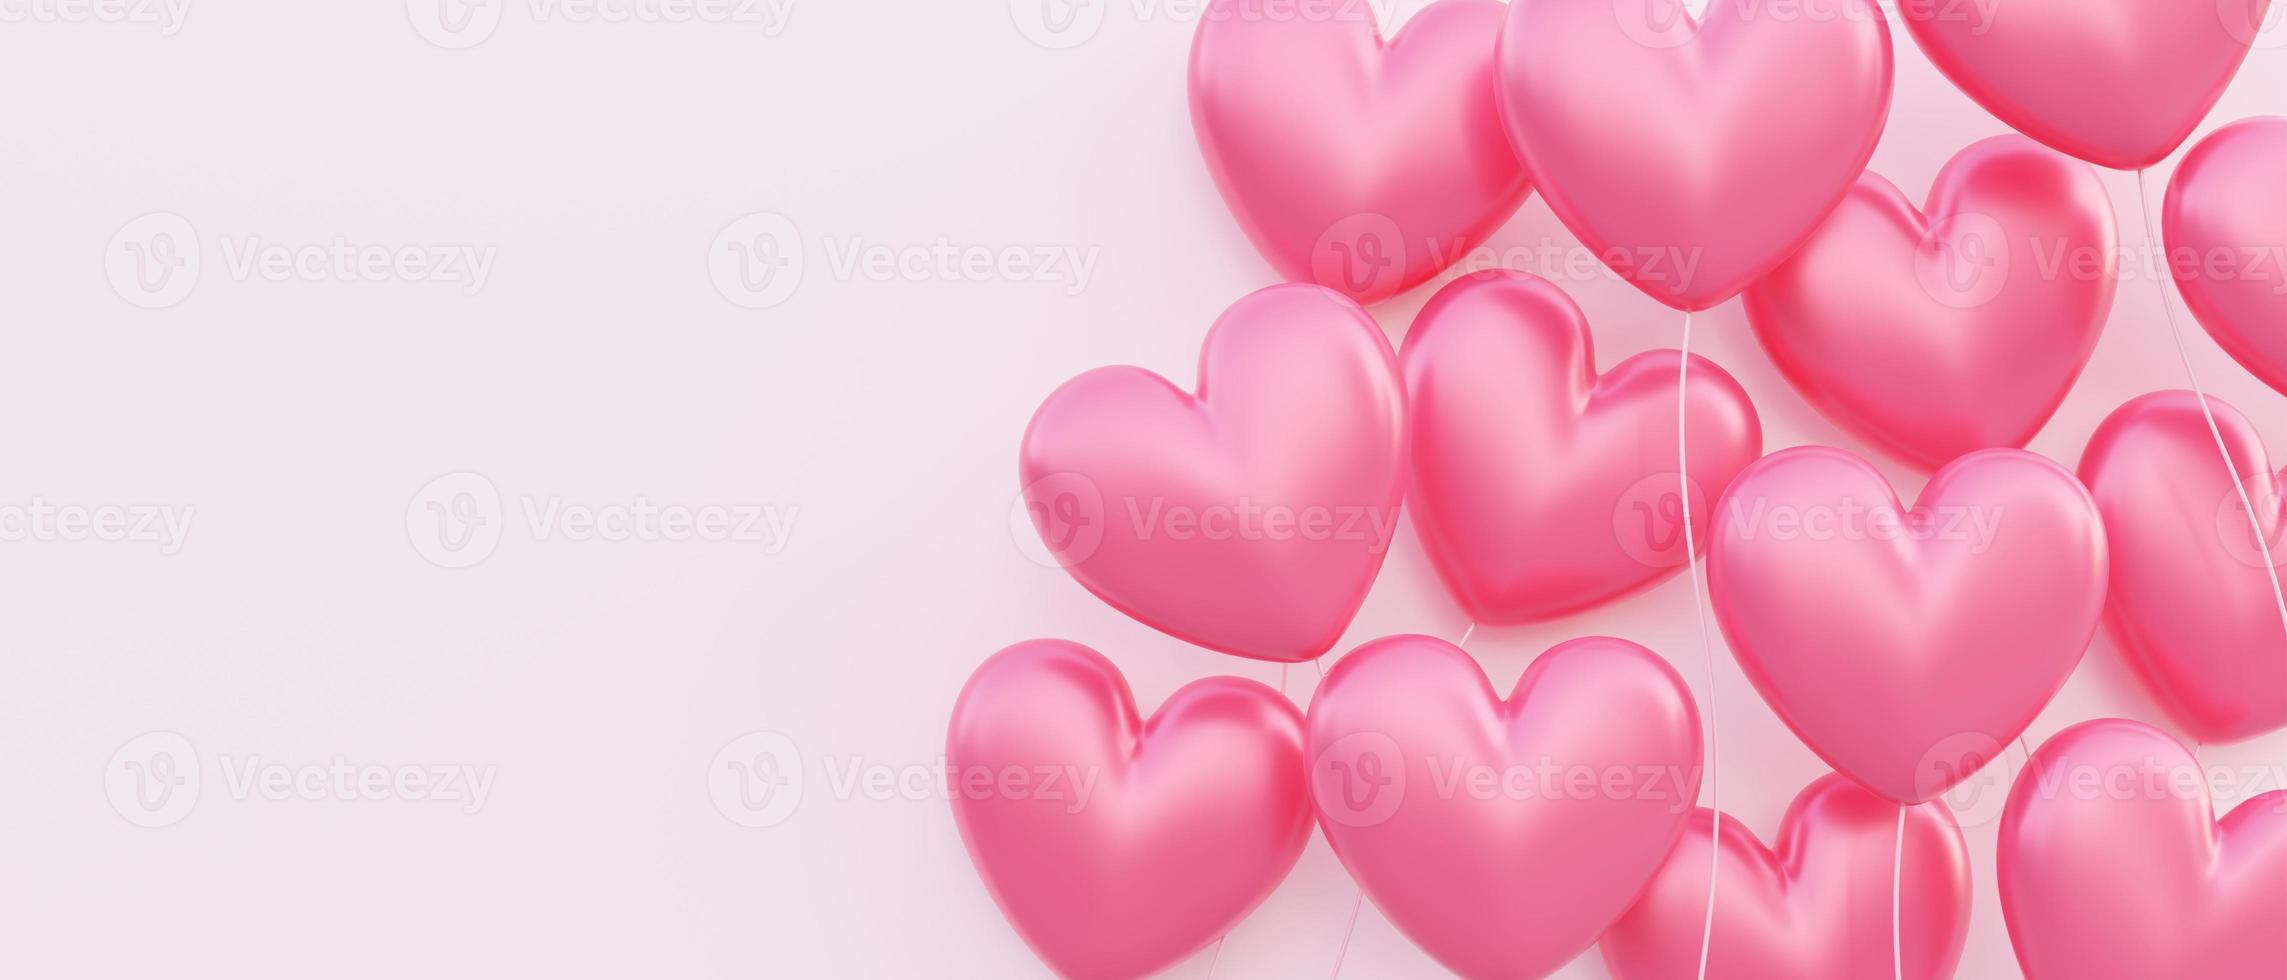 Fondo de banner del día de San Valentín, ilustración 3d de globos rojos en forma de corazón flotando superpuestos foto